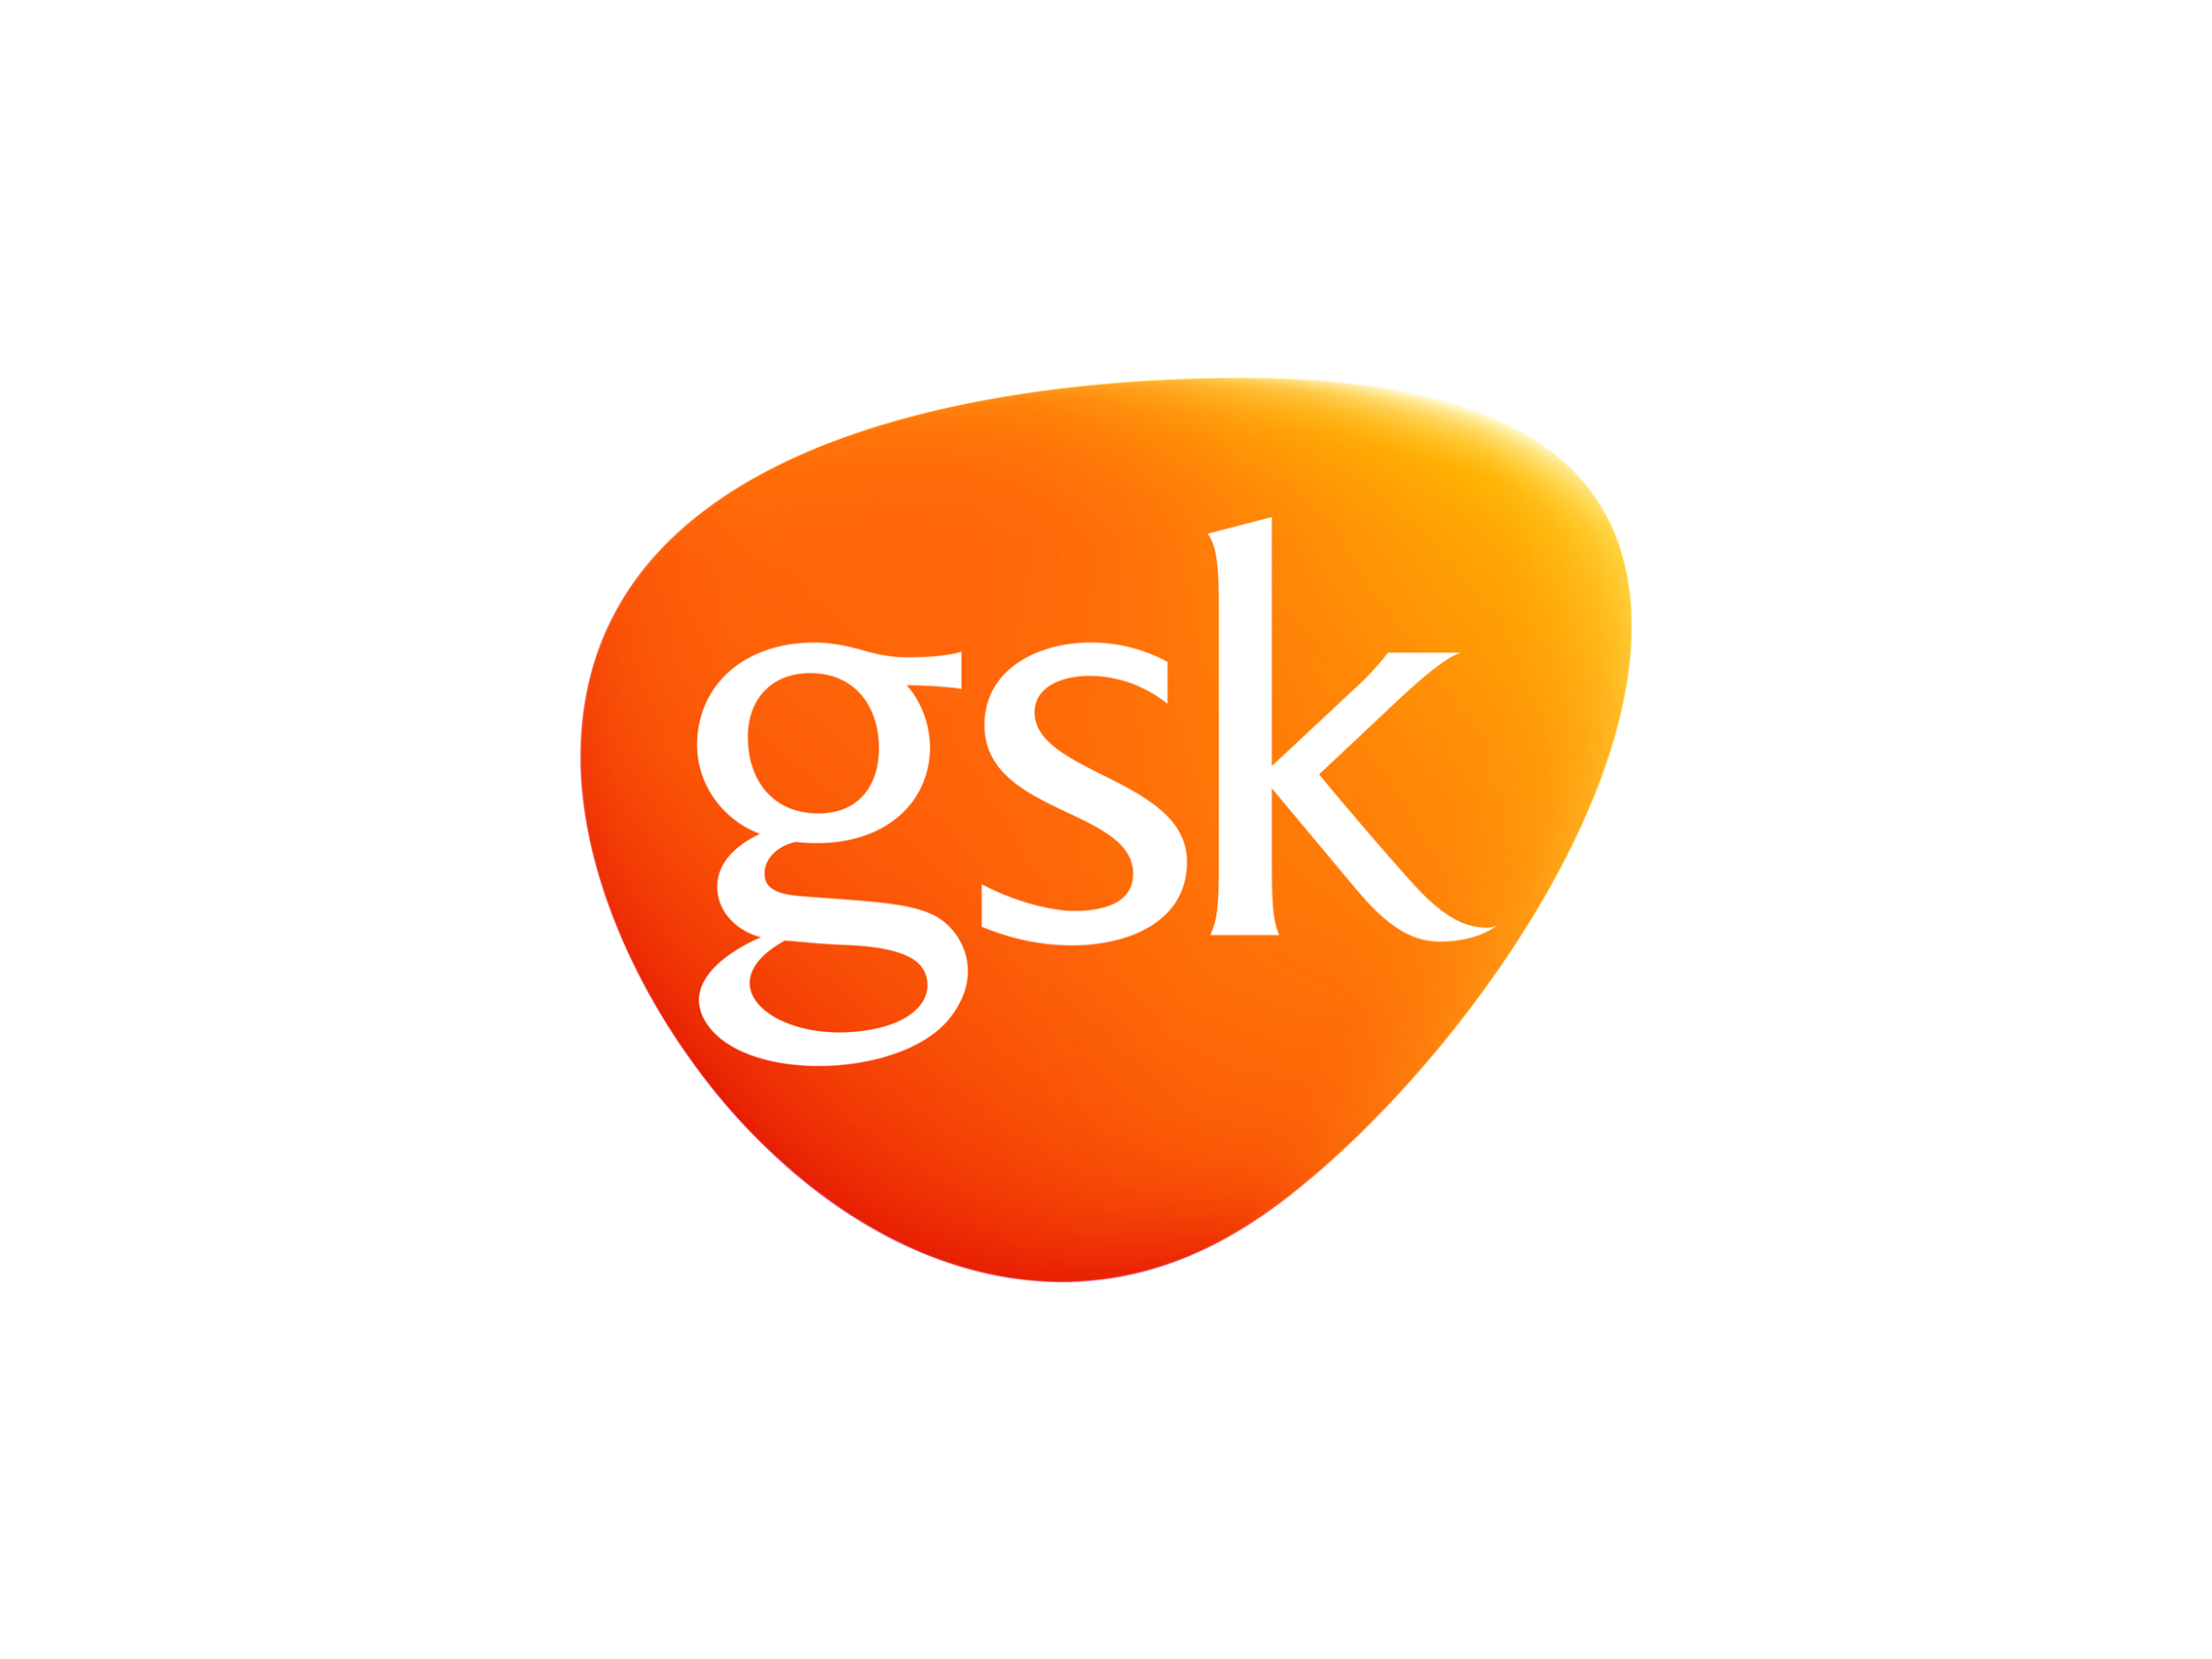 Gsk Logo Png · image source.